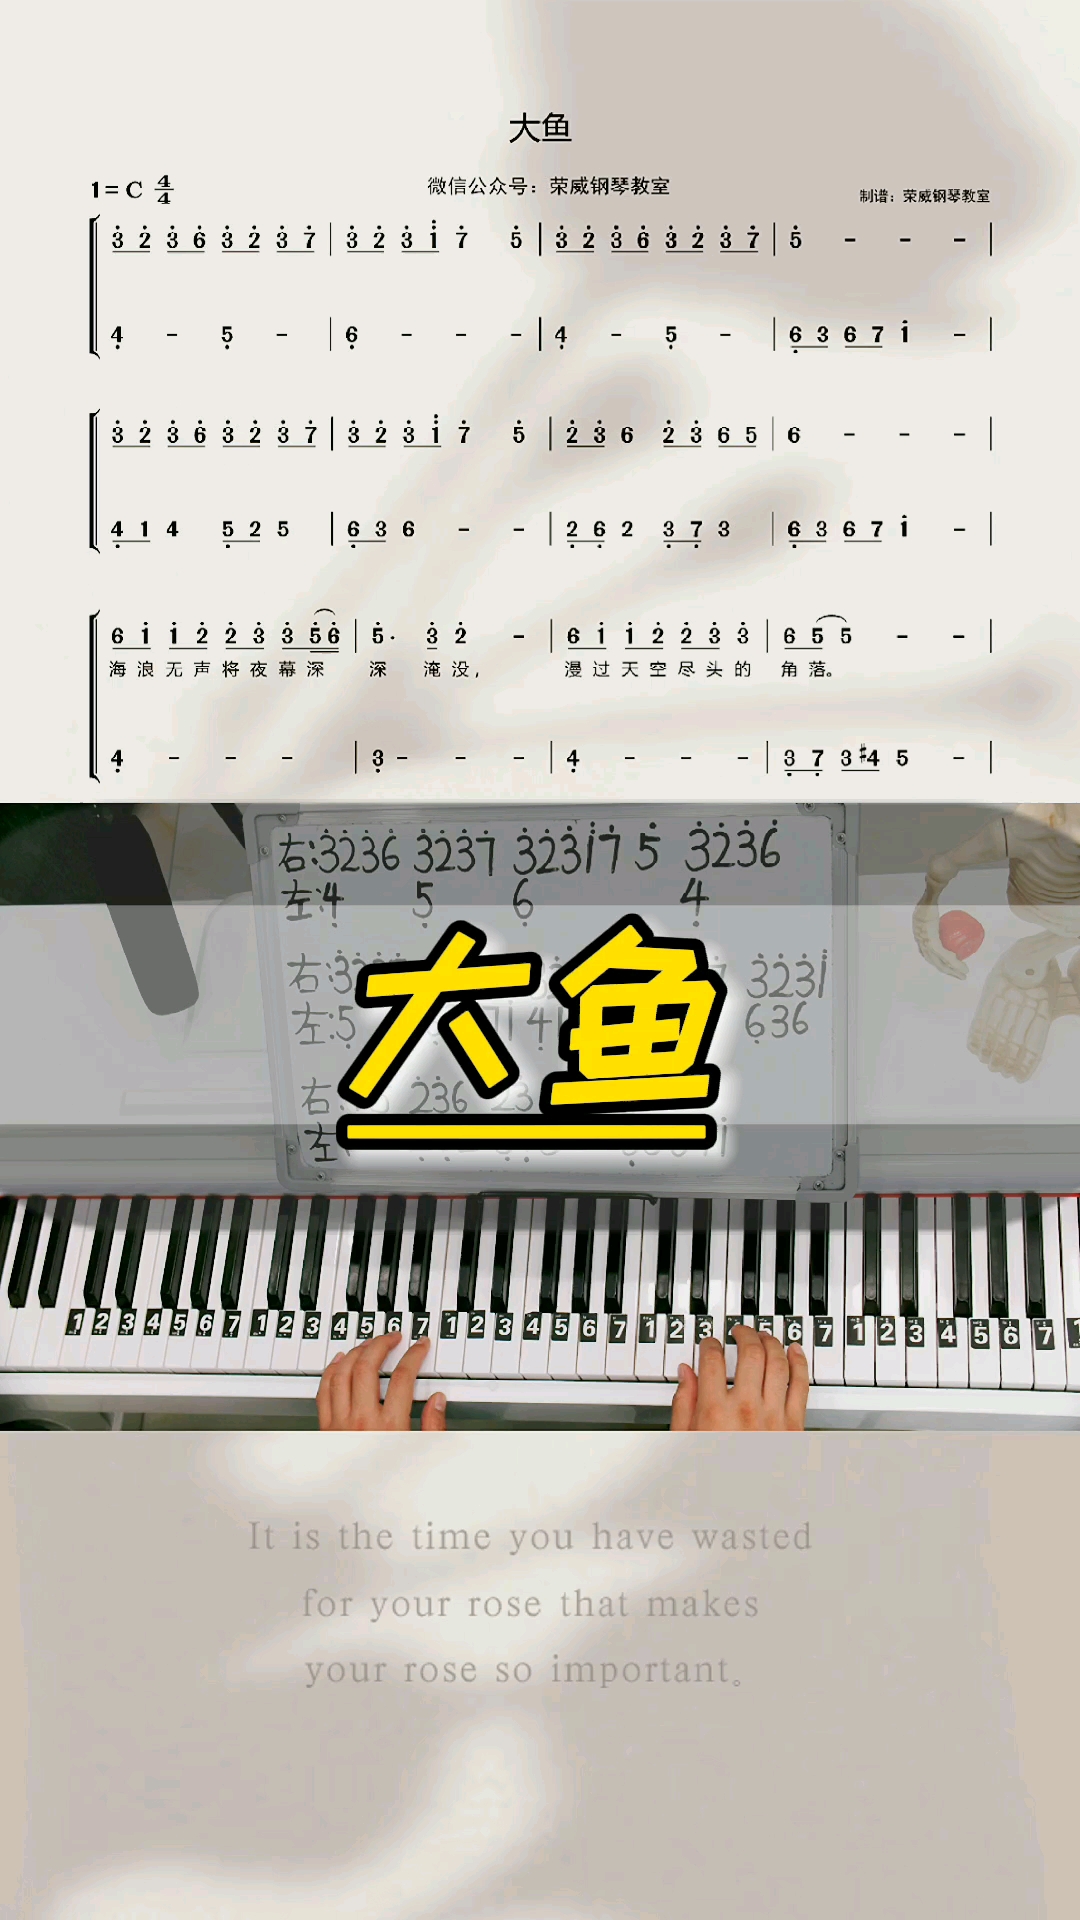 《大鱼海棠》钢琴教学零基础版双手钢琴简谱来咯!完整版已搞定!